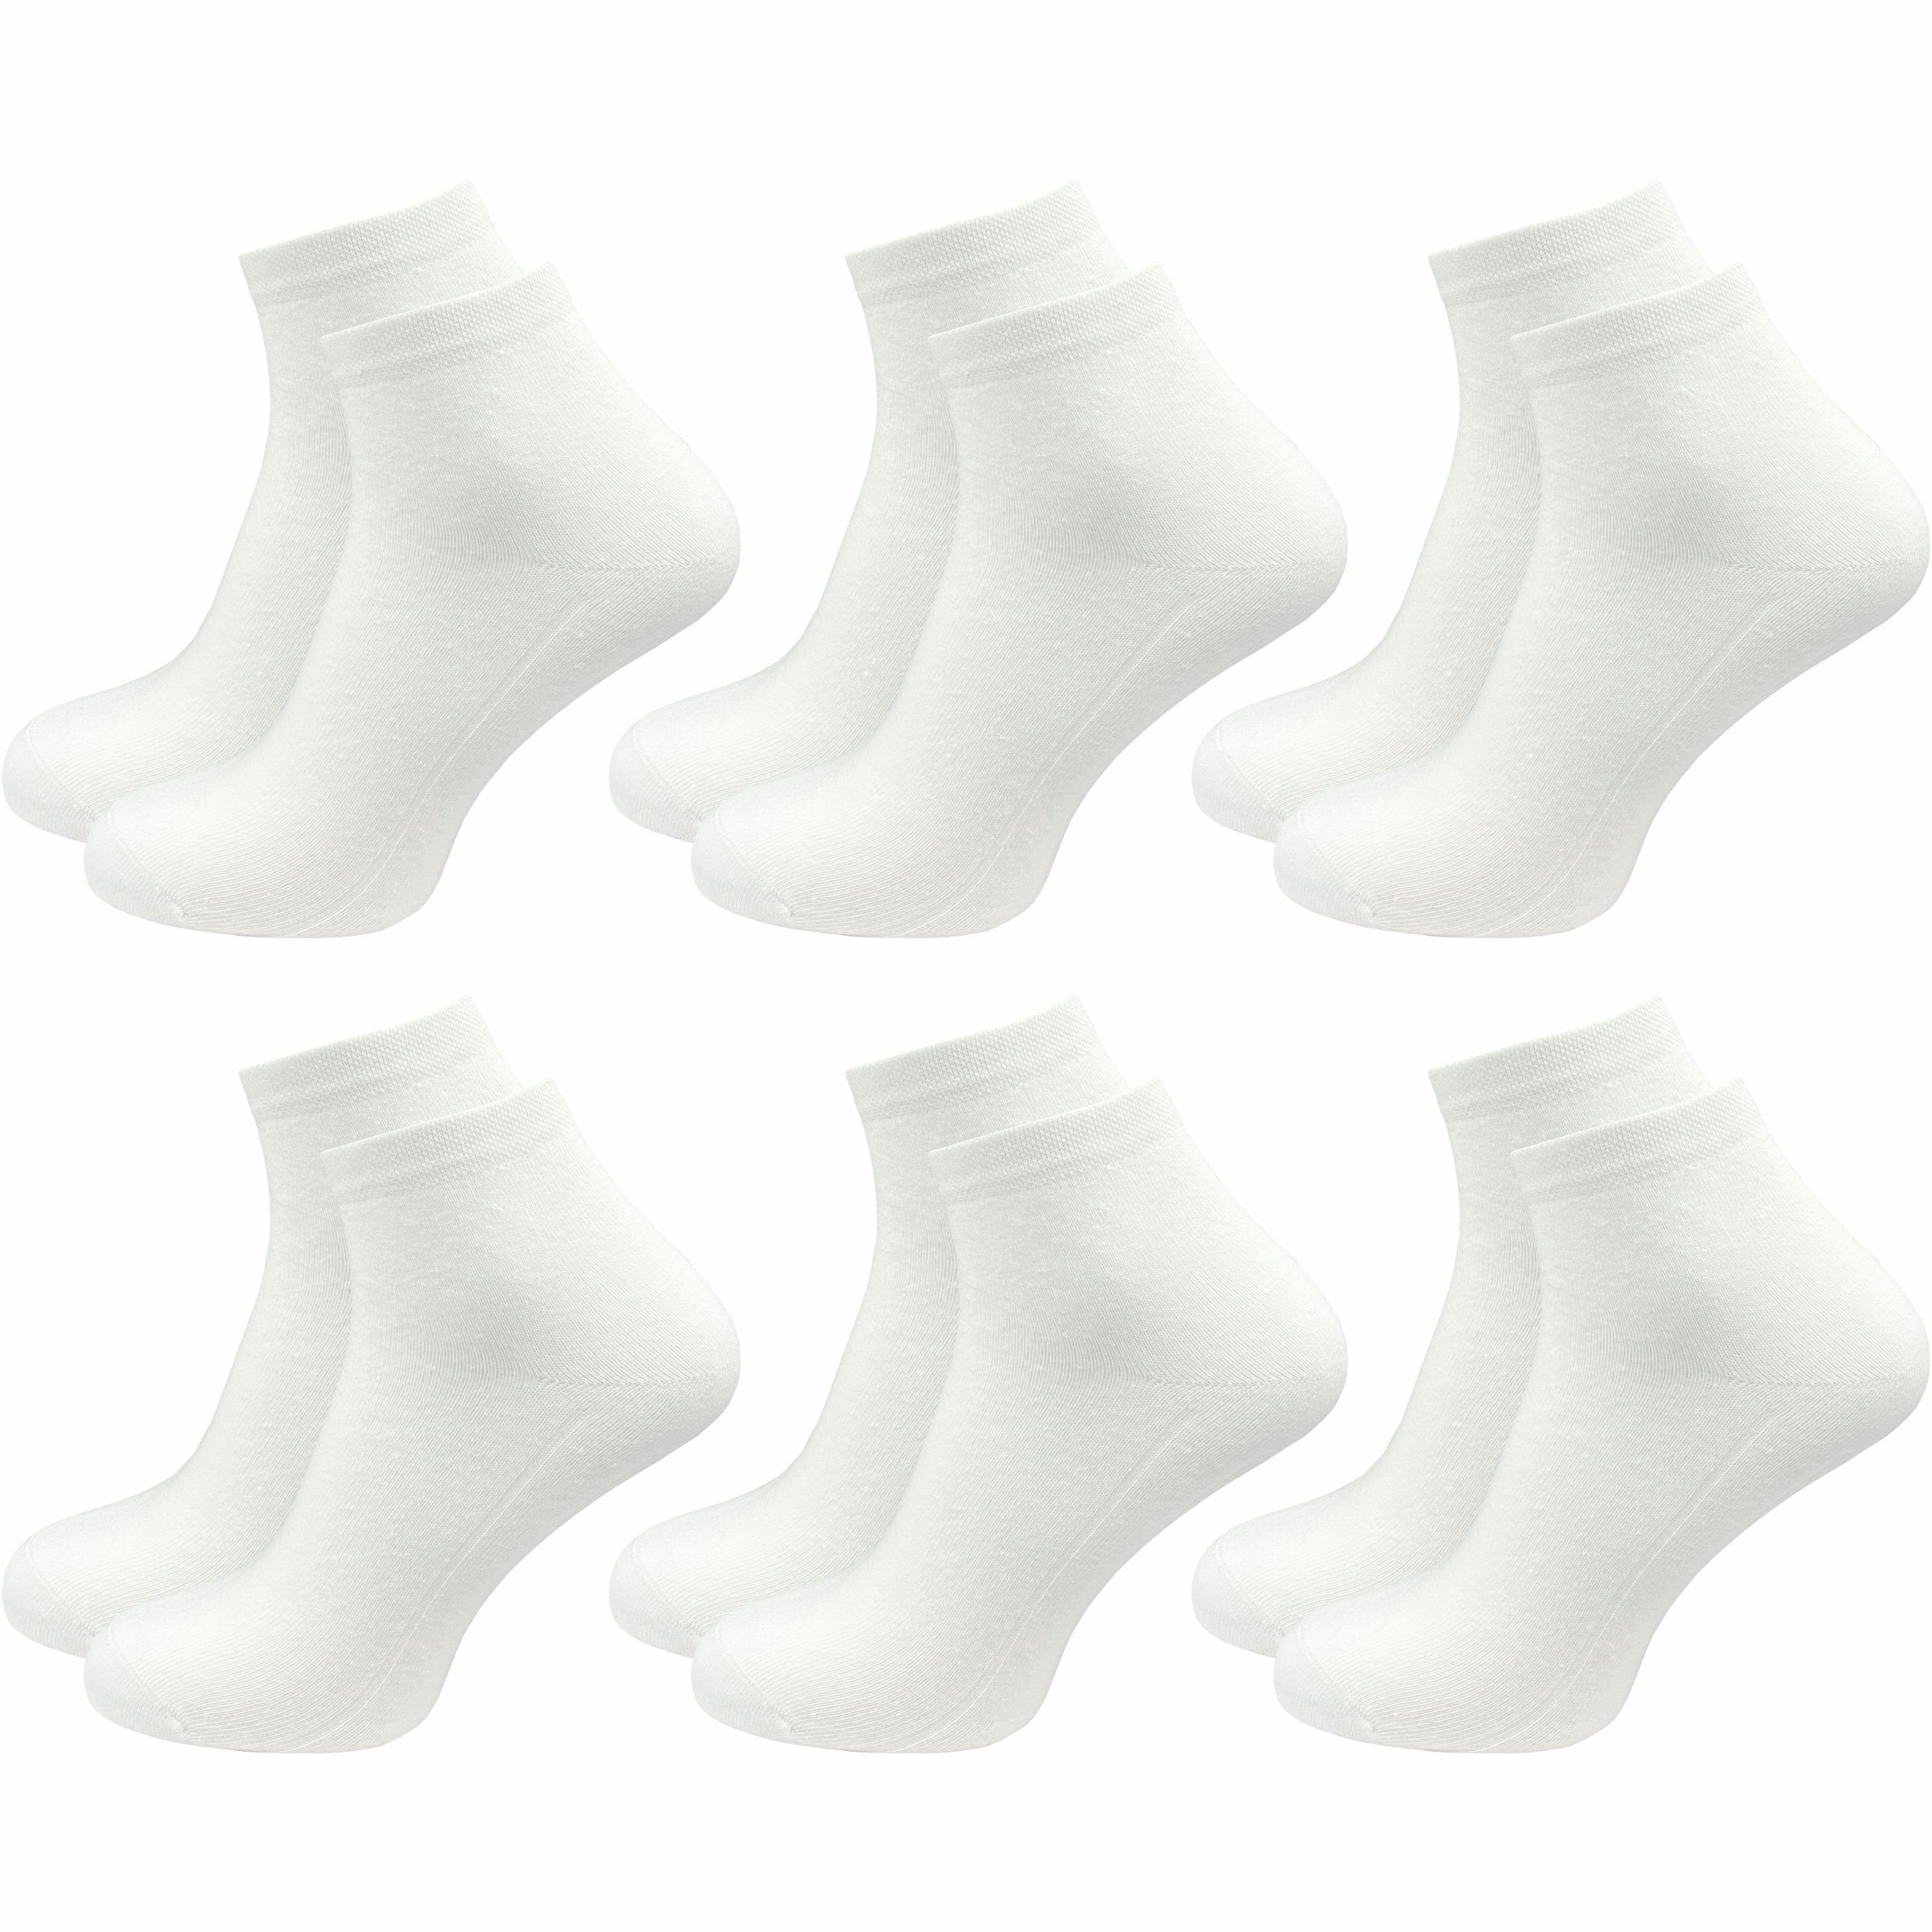 GAWILO Короткие носки für Herren, Quartersocken in schwarz & weiß - ohne drückende Naht (6 Paar) Schaft etwas länger als bei einer Sneaker Socke, daher kein rutschen